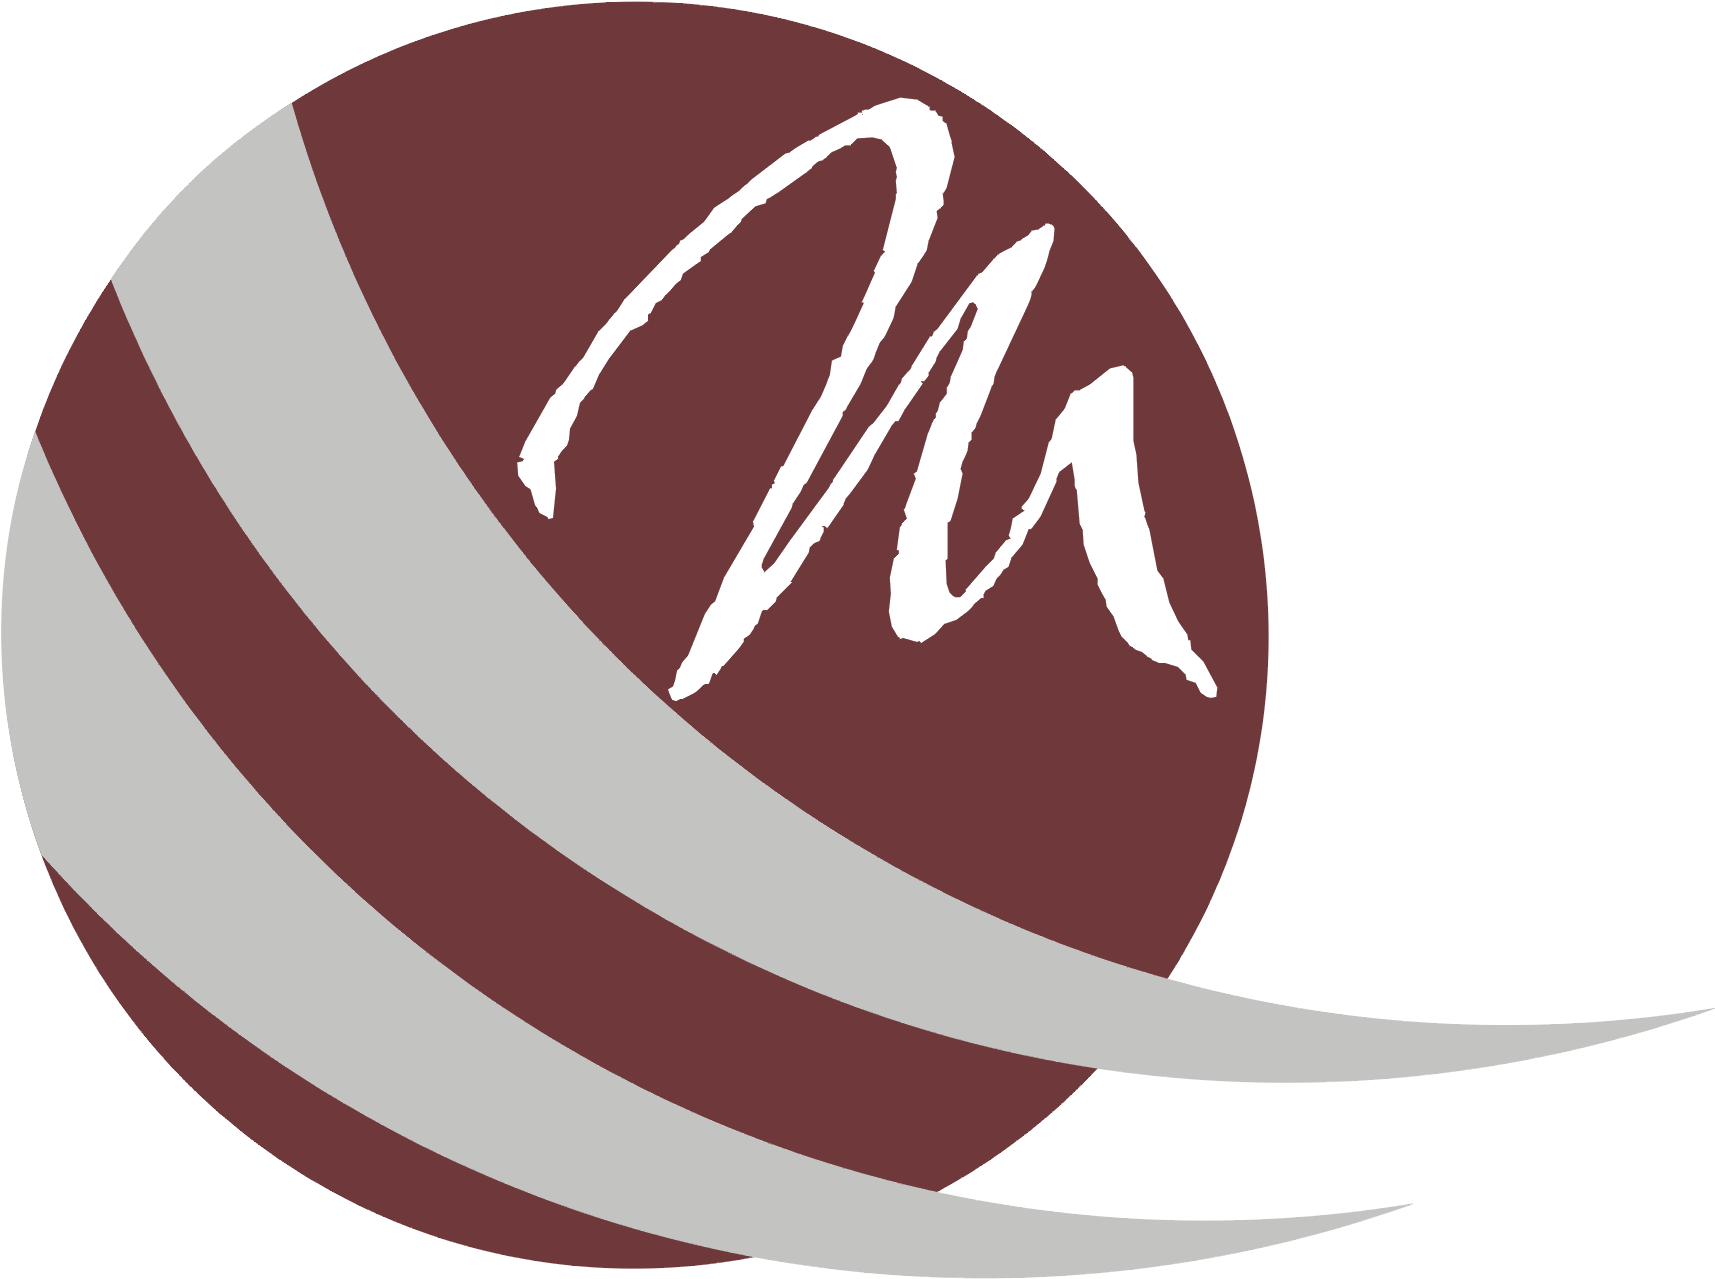 Abstract Maroon Swoosh Logo